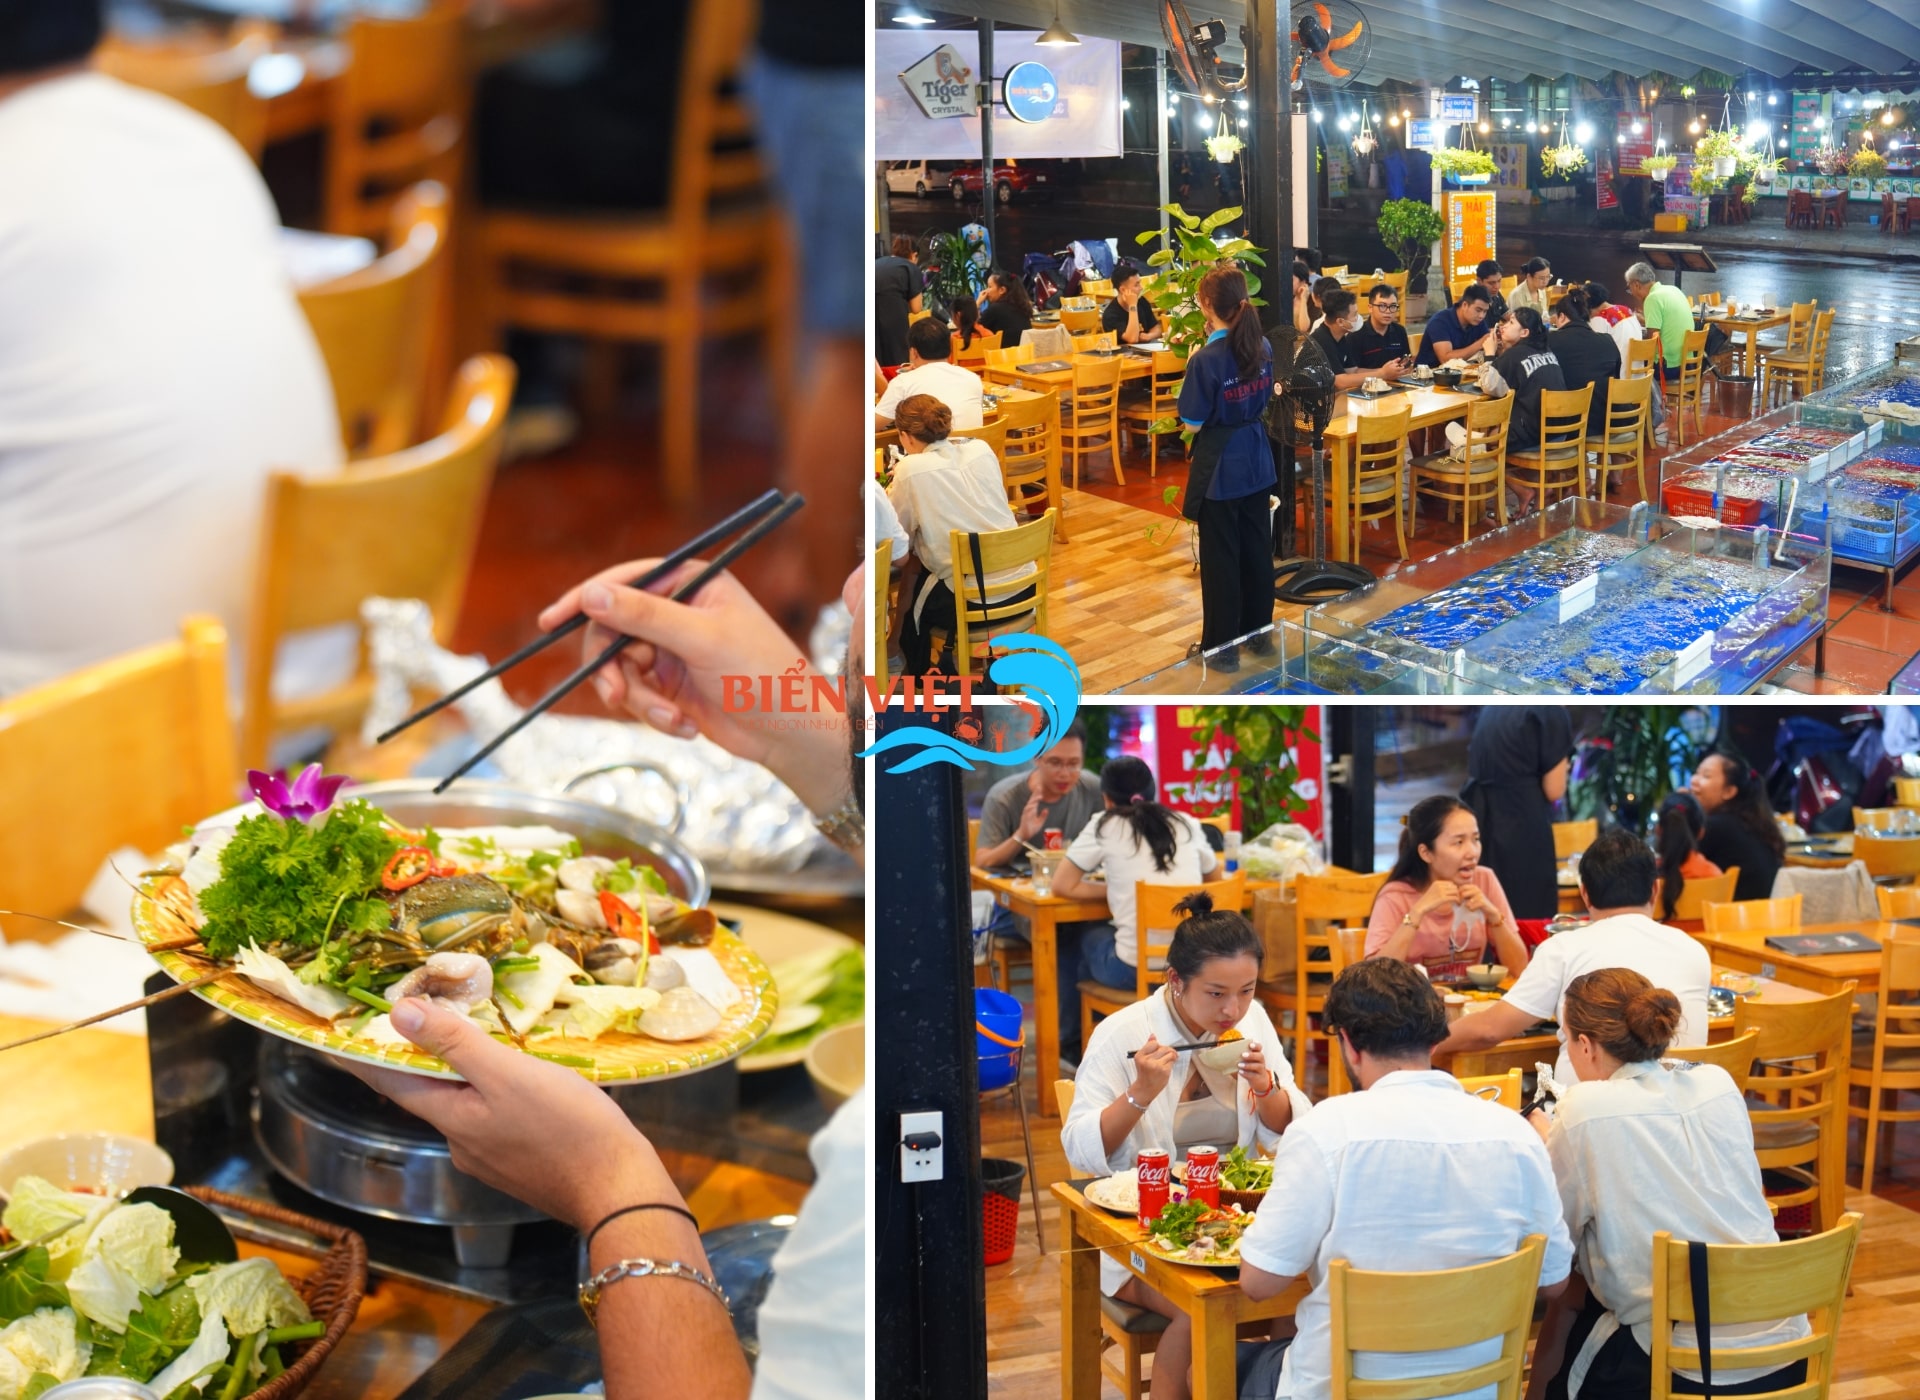 Nhà hàng hải sản Biển Việt